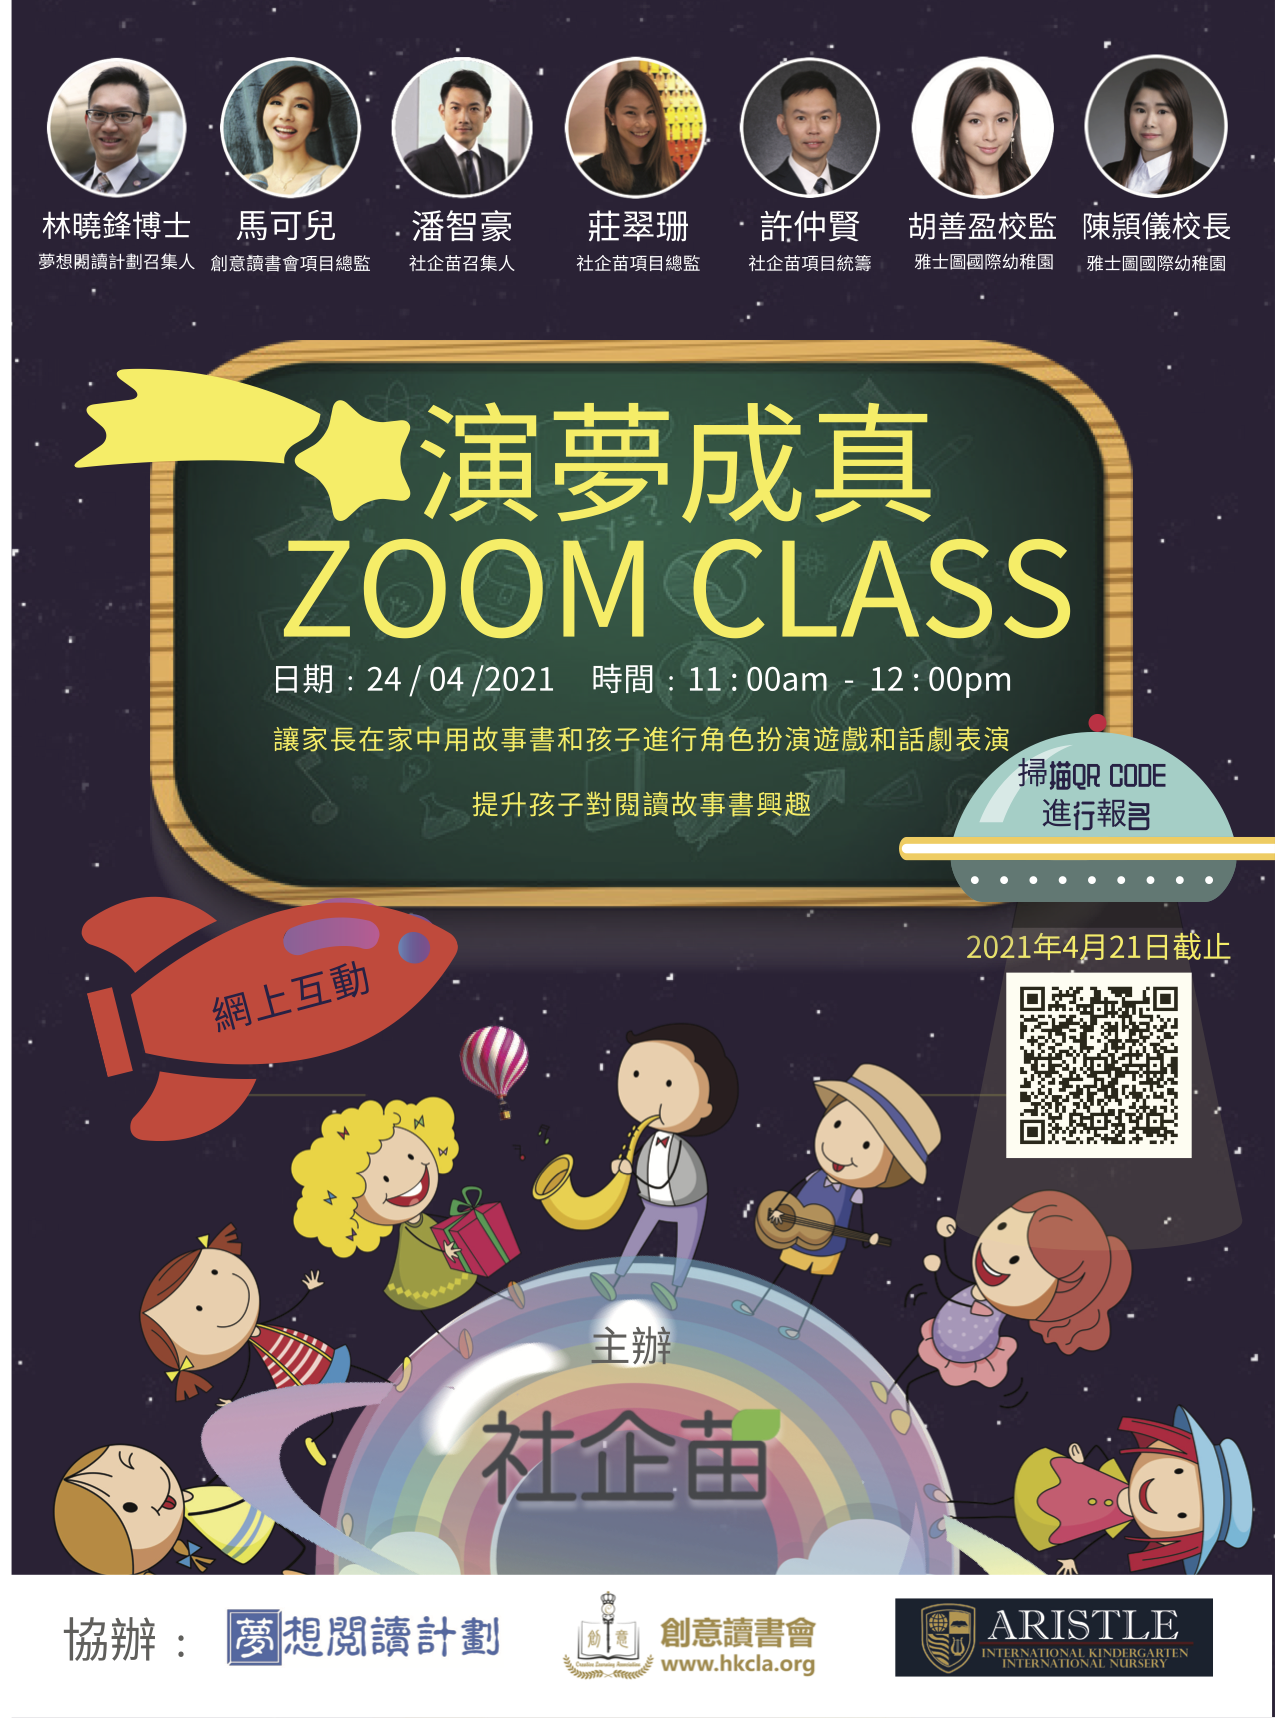 2020-2021年度閱讀延伸活動──「演夢成真Zoom Class」現正接受報名